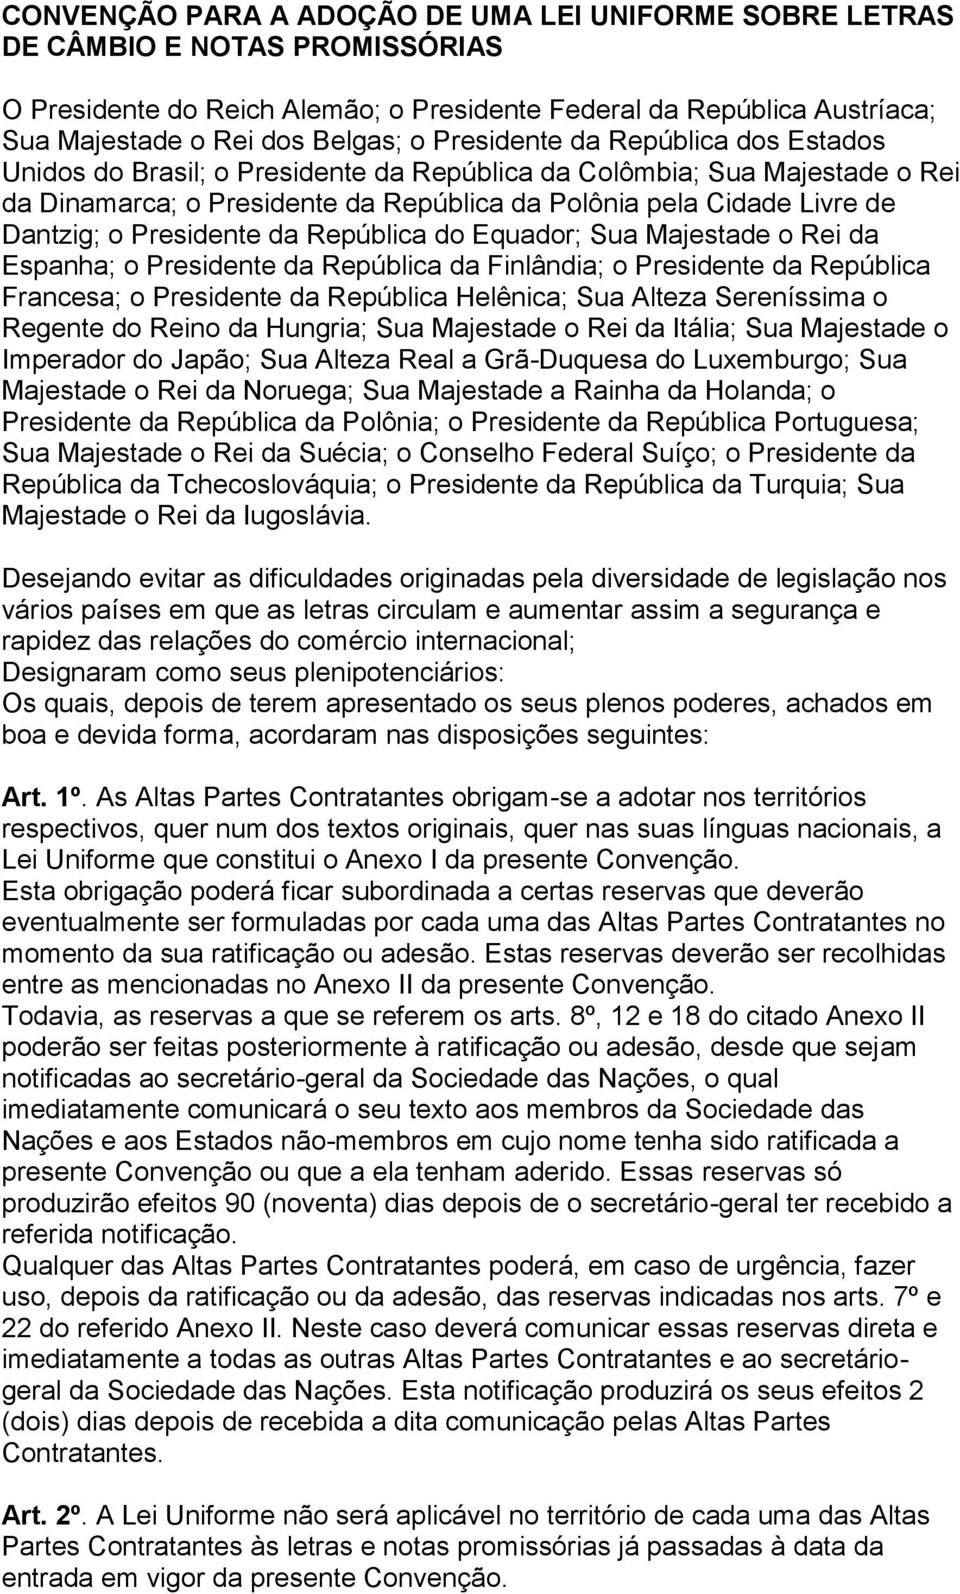 LEI UNIFORME DE GENEBRA NOTA PROMISSÓRIA E LETRA DE CÂMBIO - PDF Download  grátis